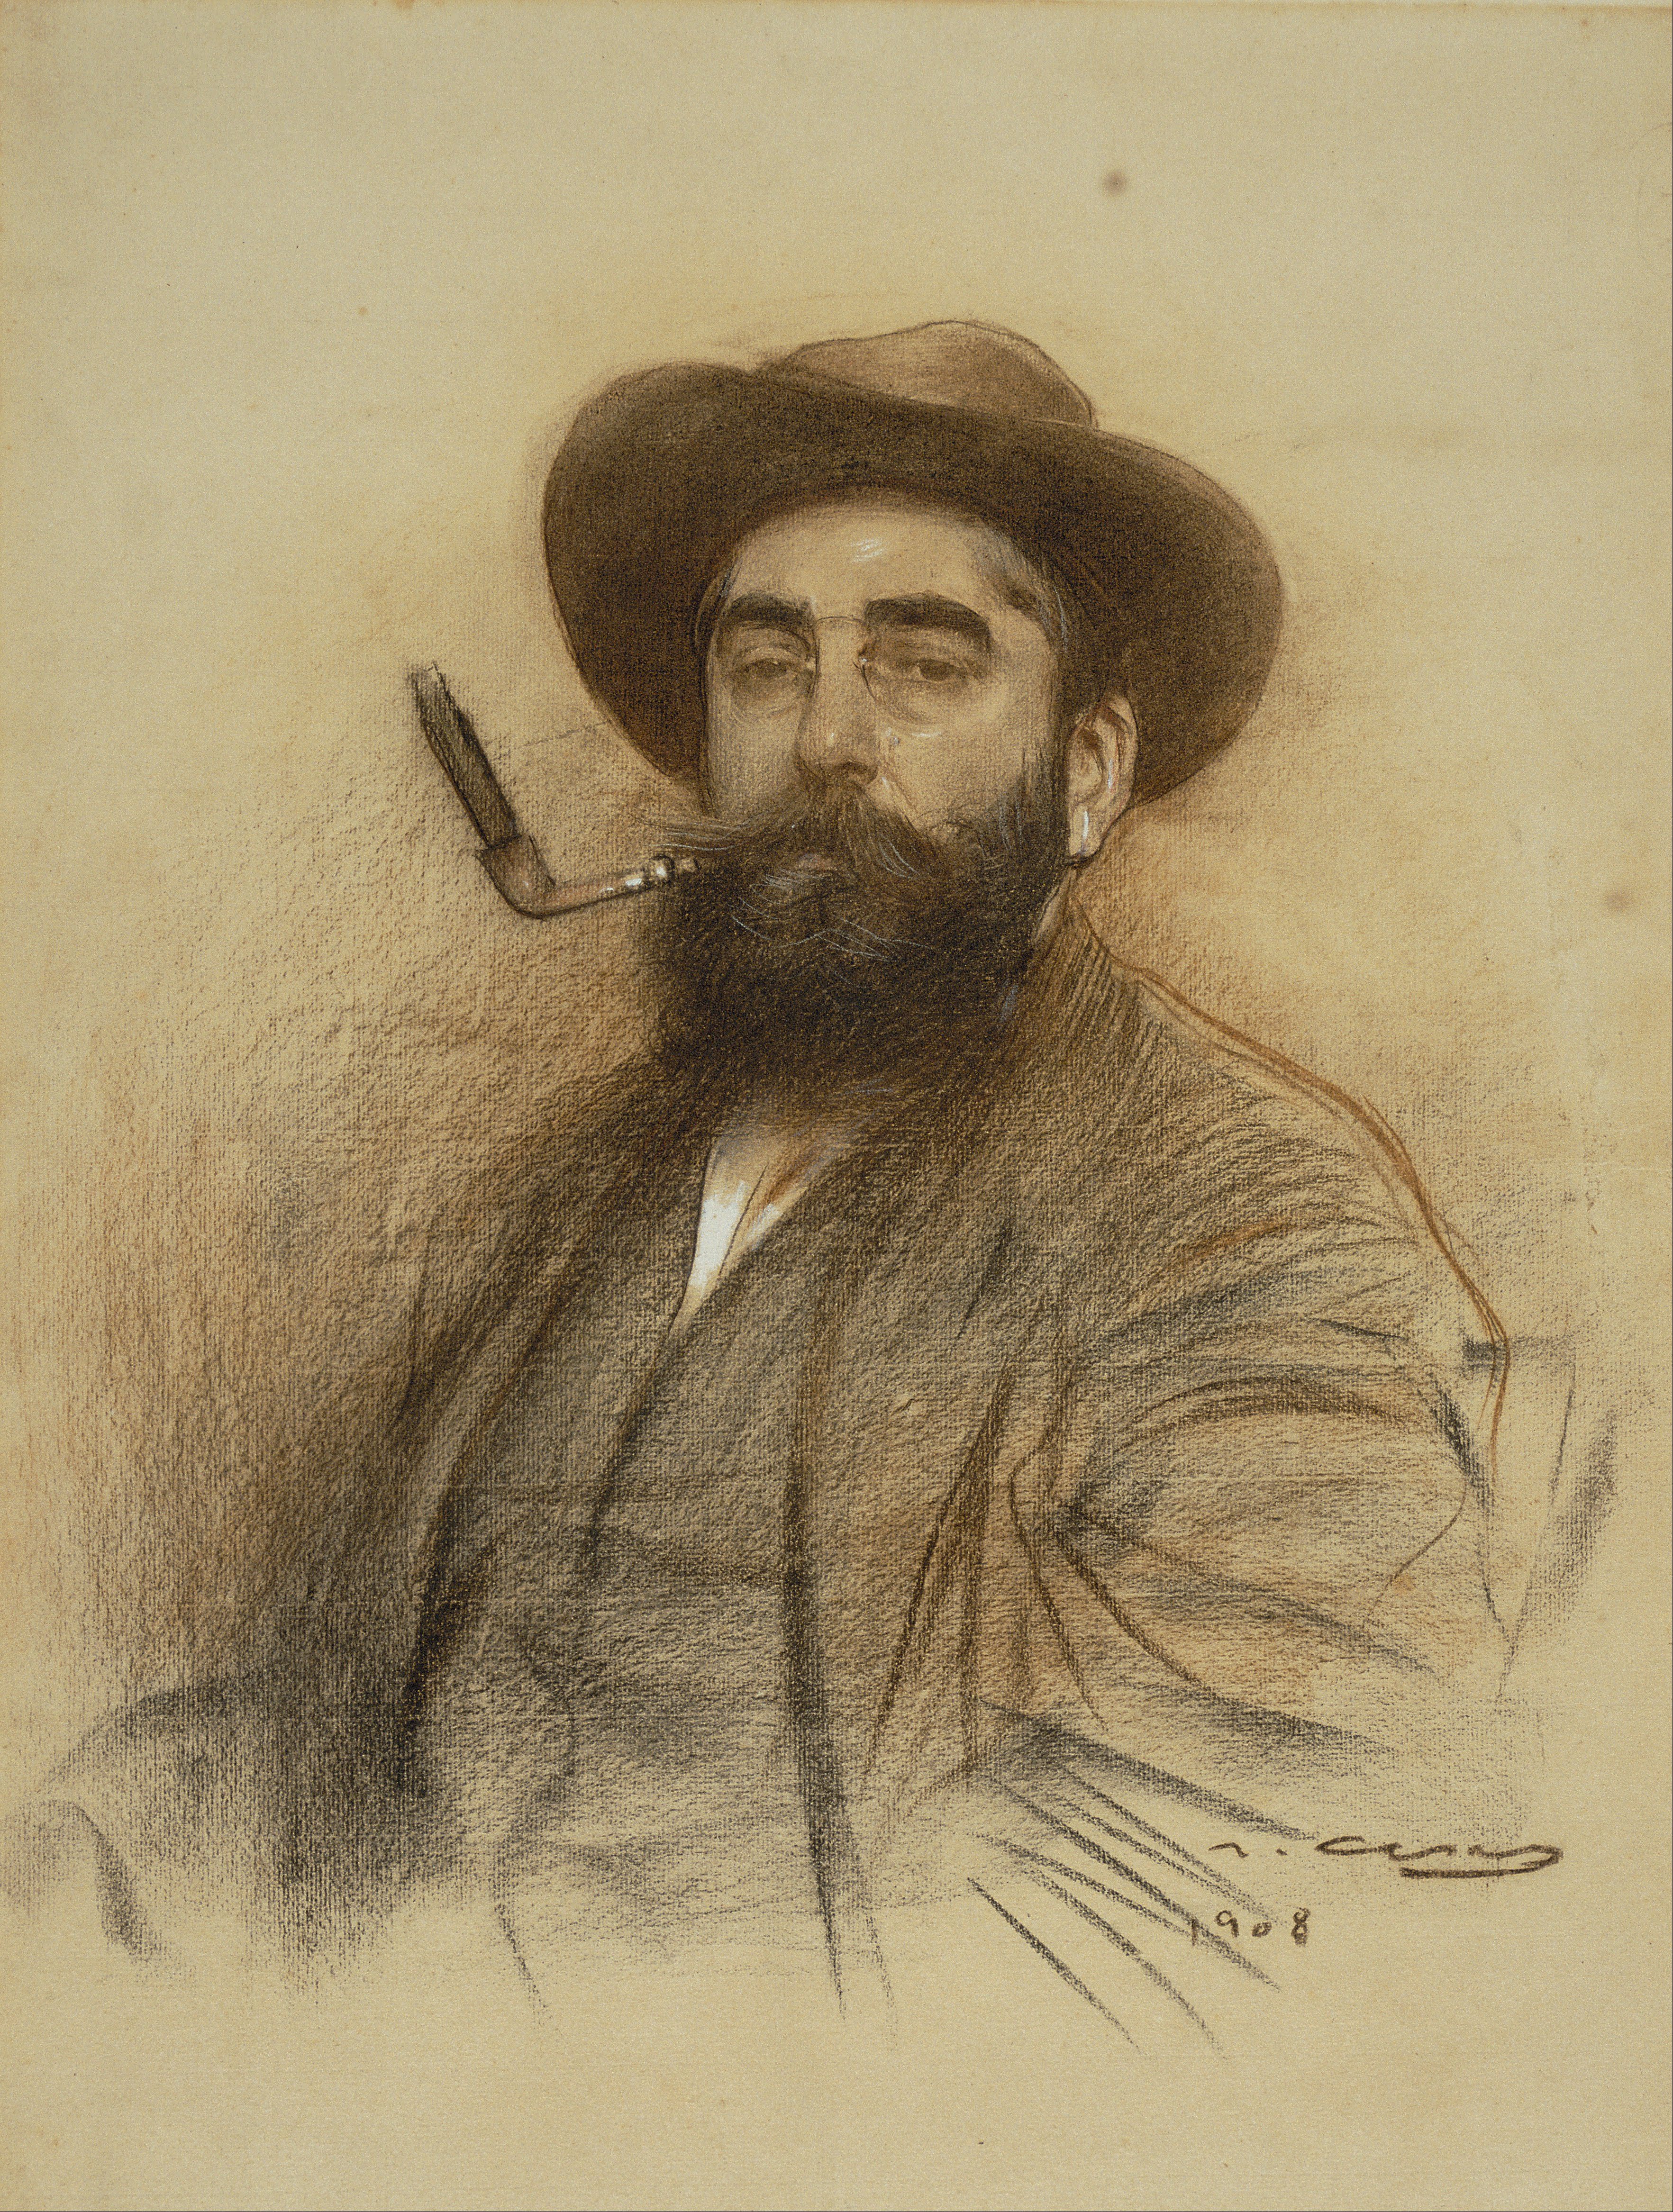 Рамон Касас - 4 января 1866 - 29 февраля 1932